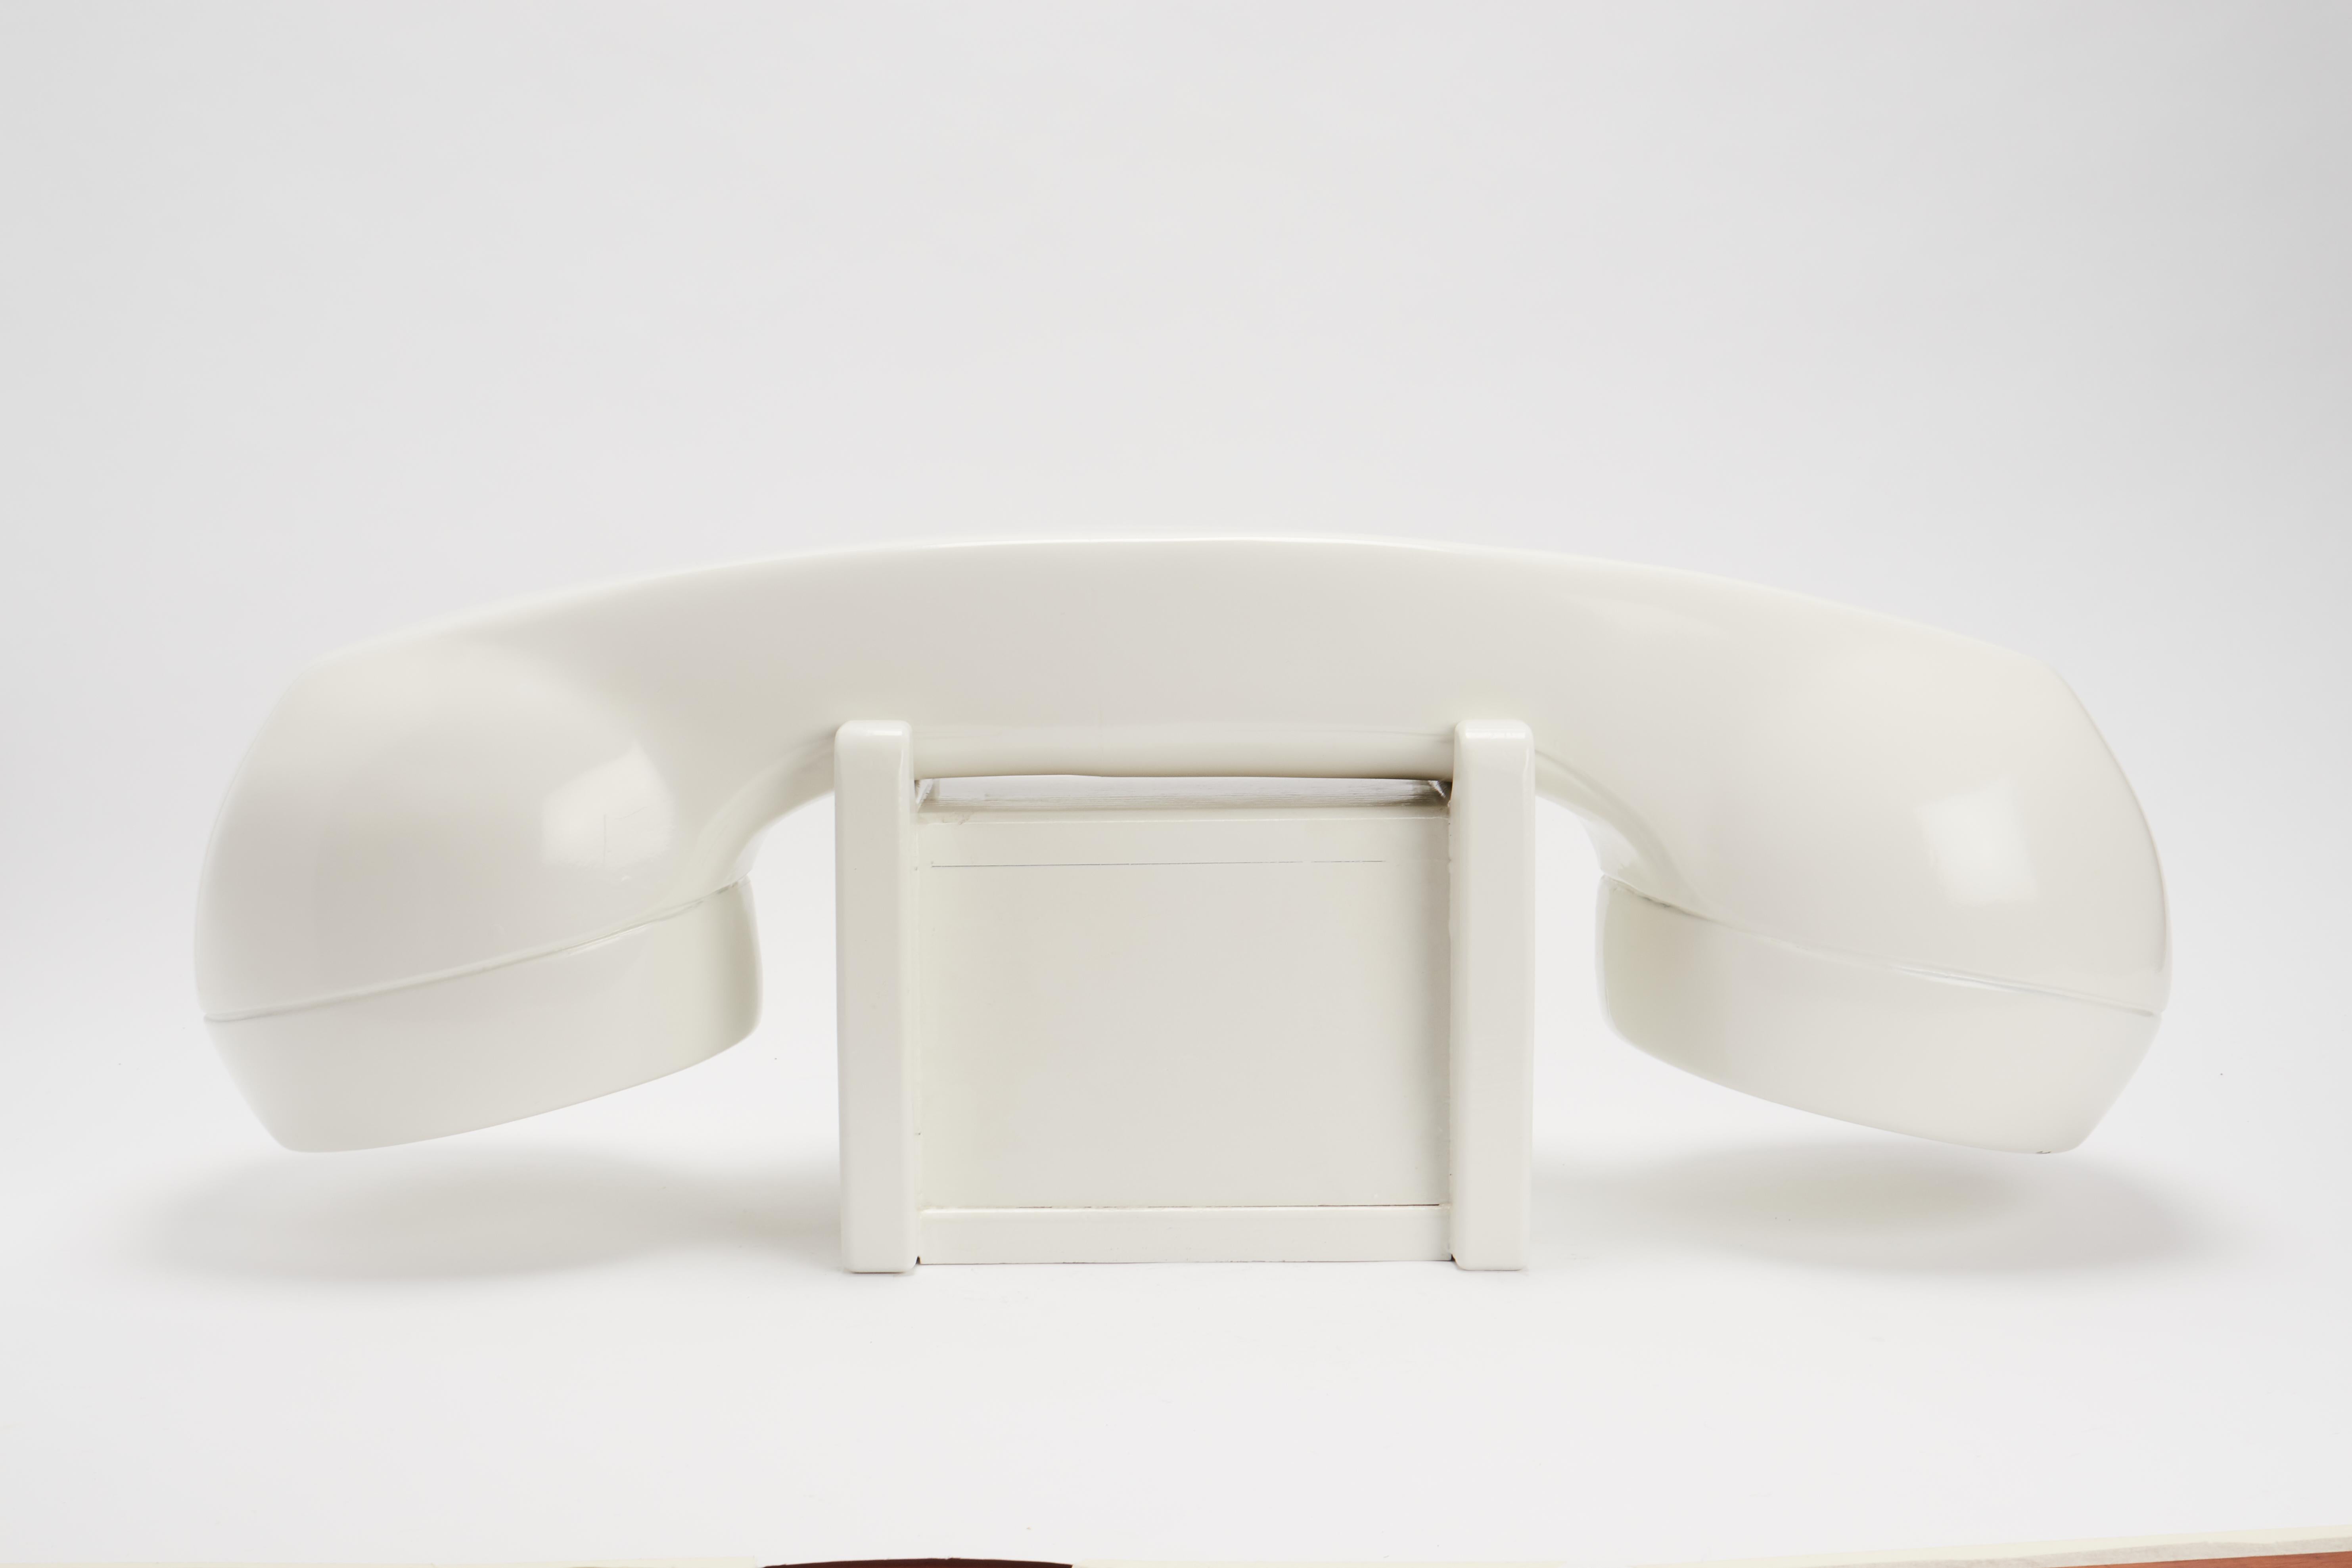 Ein Schaufensterschild einer amerikanischen Telefongesellschaft, auf dem ein großes Telefon abgebildet ist. Aus Obstholz geschnitzt und mit weißer Emaille bemalt. USA 1950 ca.